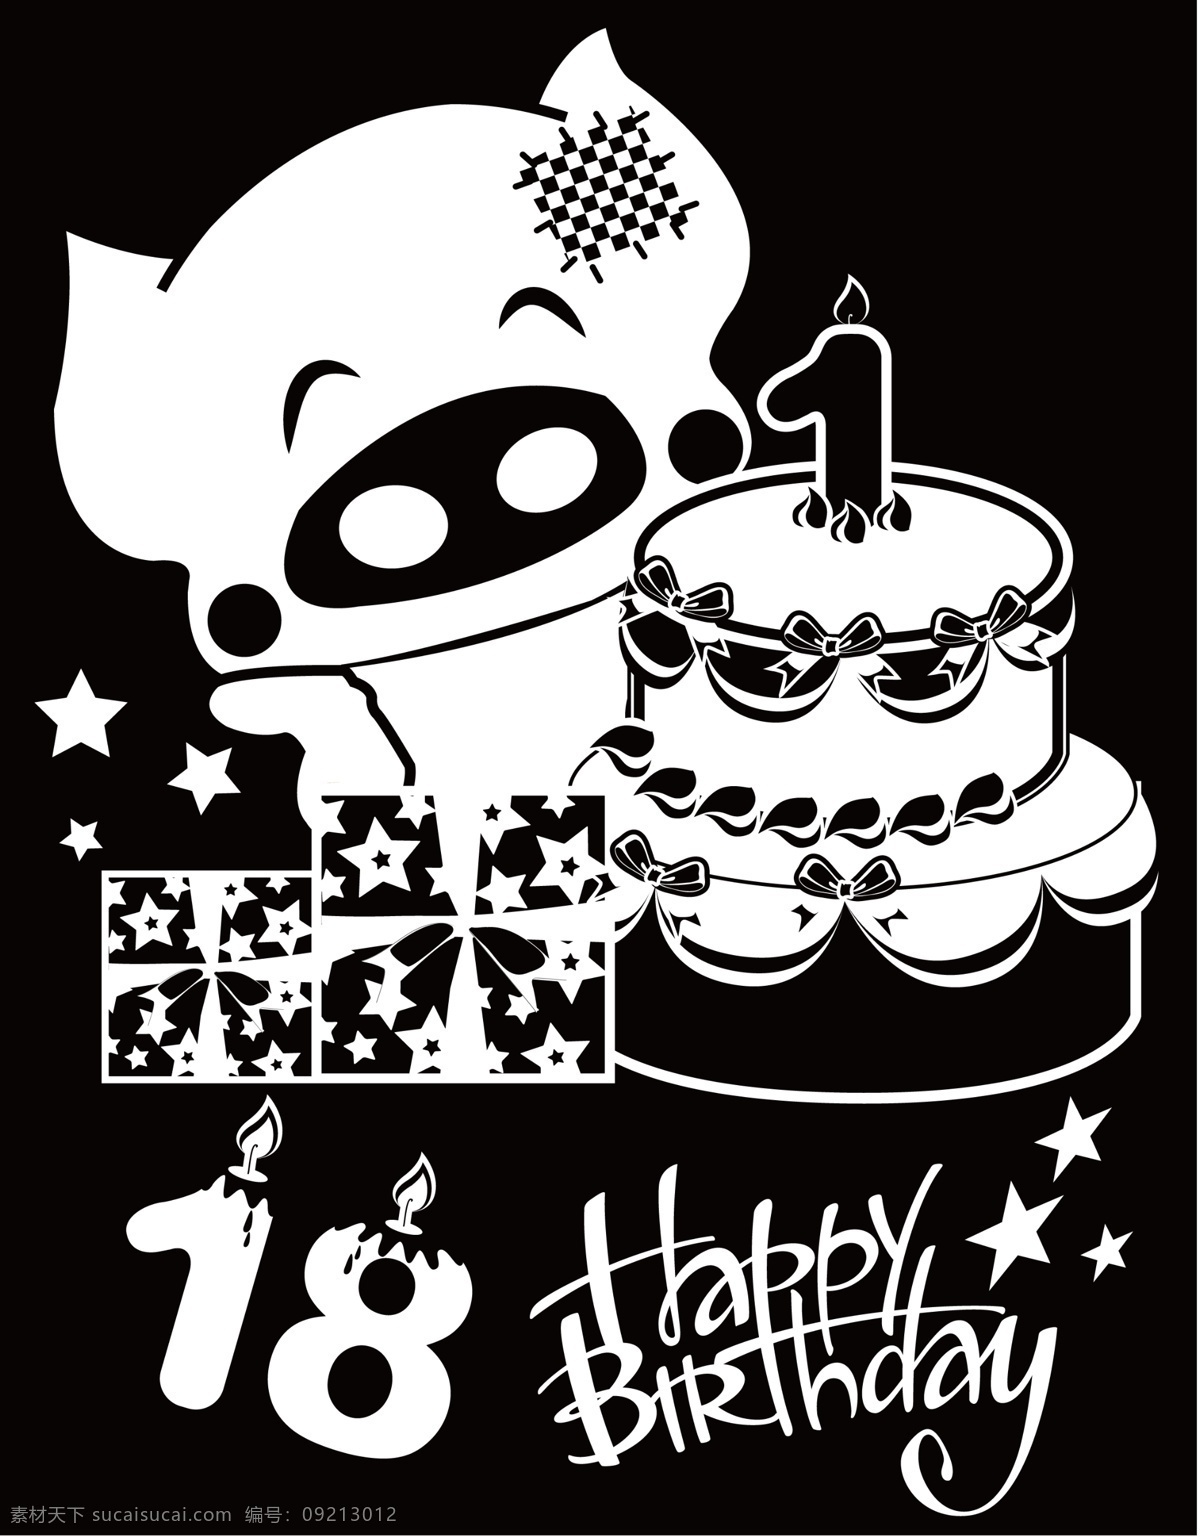 生肖 猪 岁 黑白 画 birthday happy 蛋糕 蜡烛 礼物盒 麦兜 星星 18岁 补丁 原创设计 其他原创设计